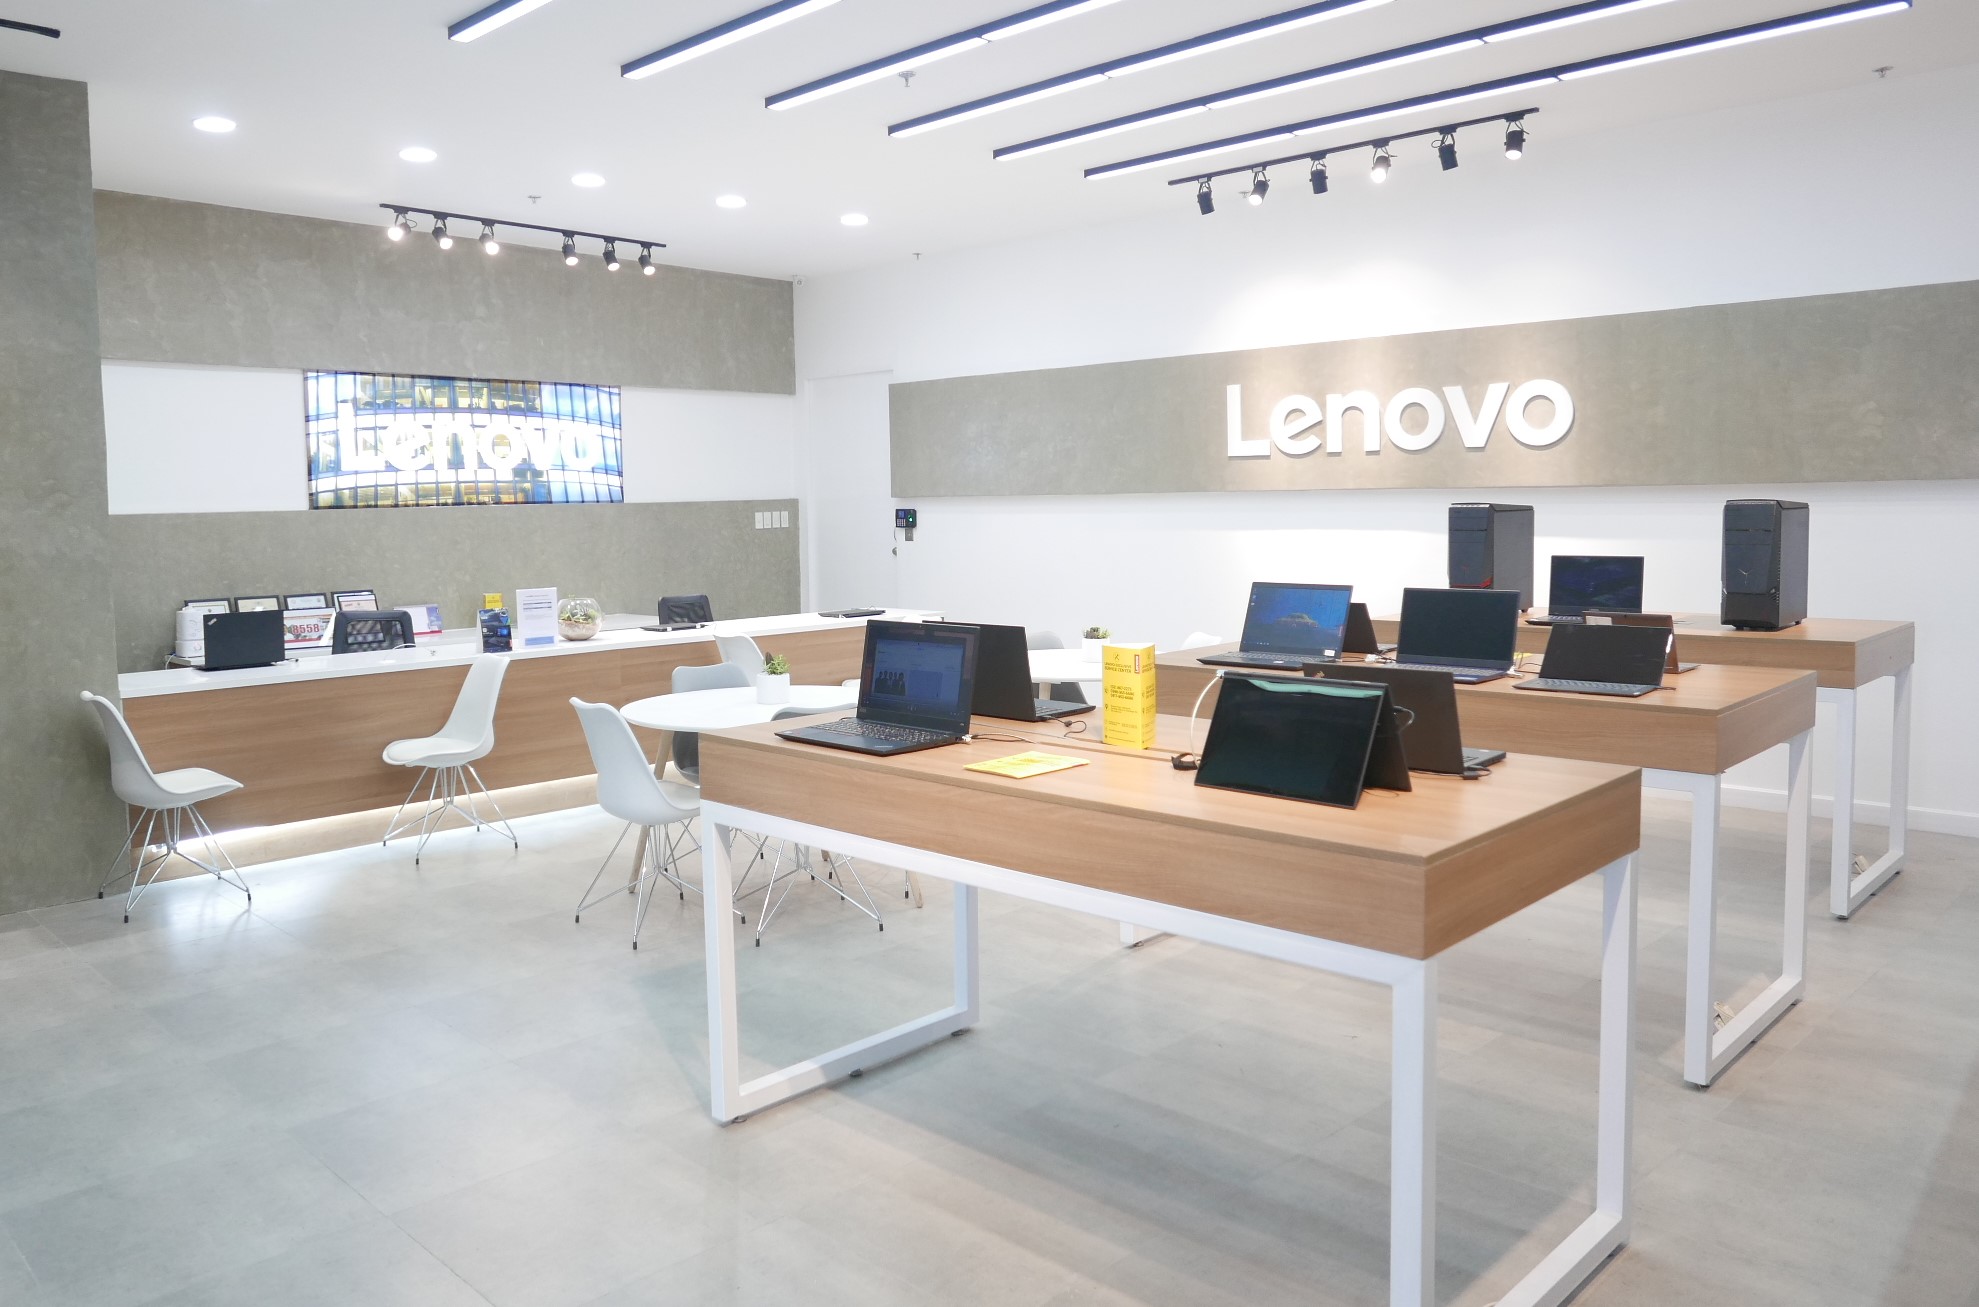 Lenovo Service Center interior_Pinoy Tech Blog